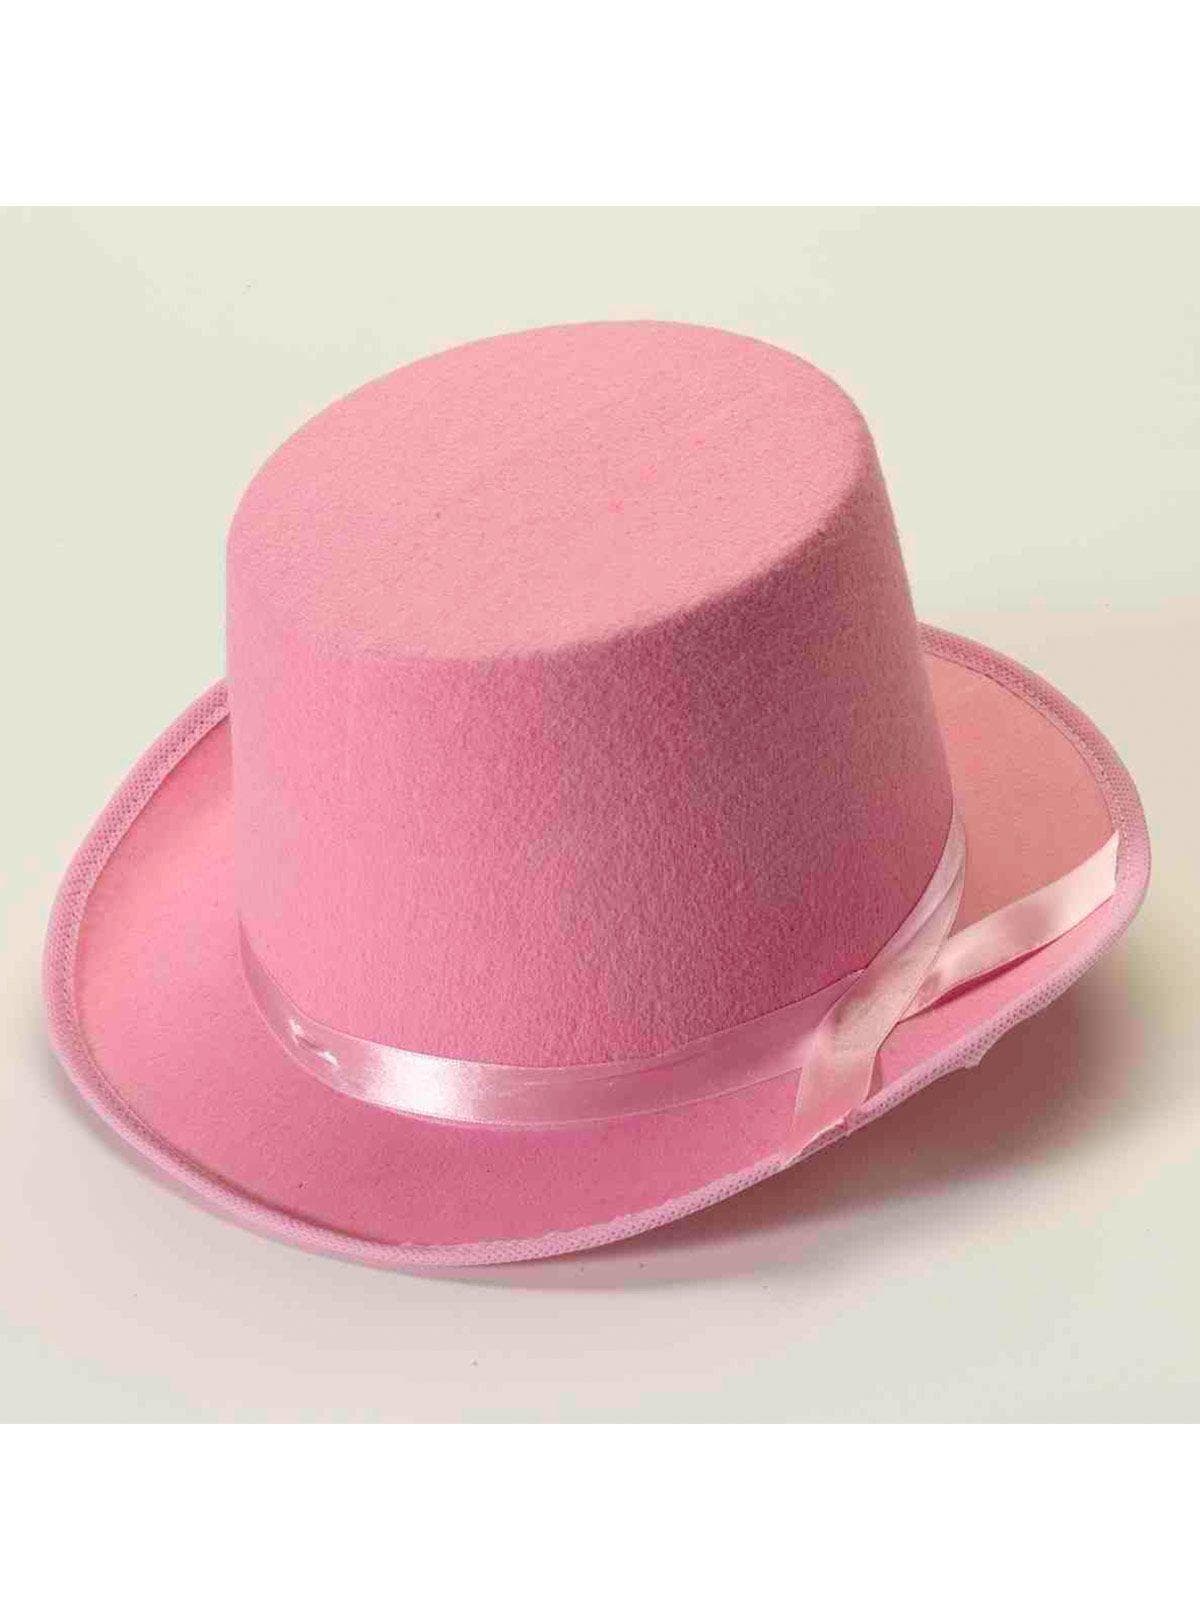 Pink Top Hat - costumes.com